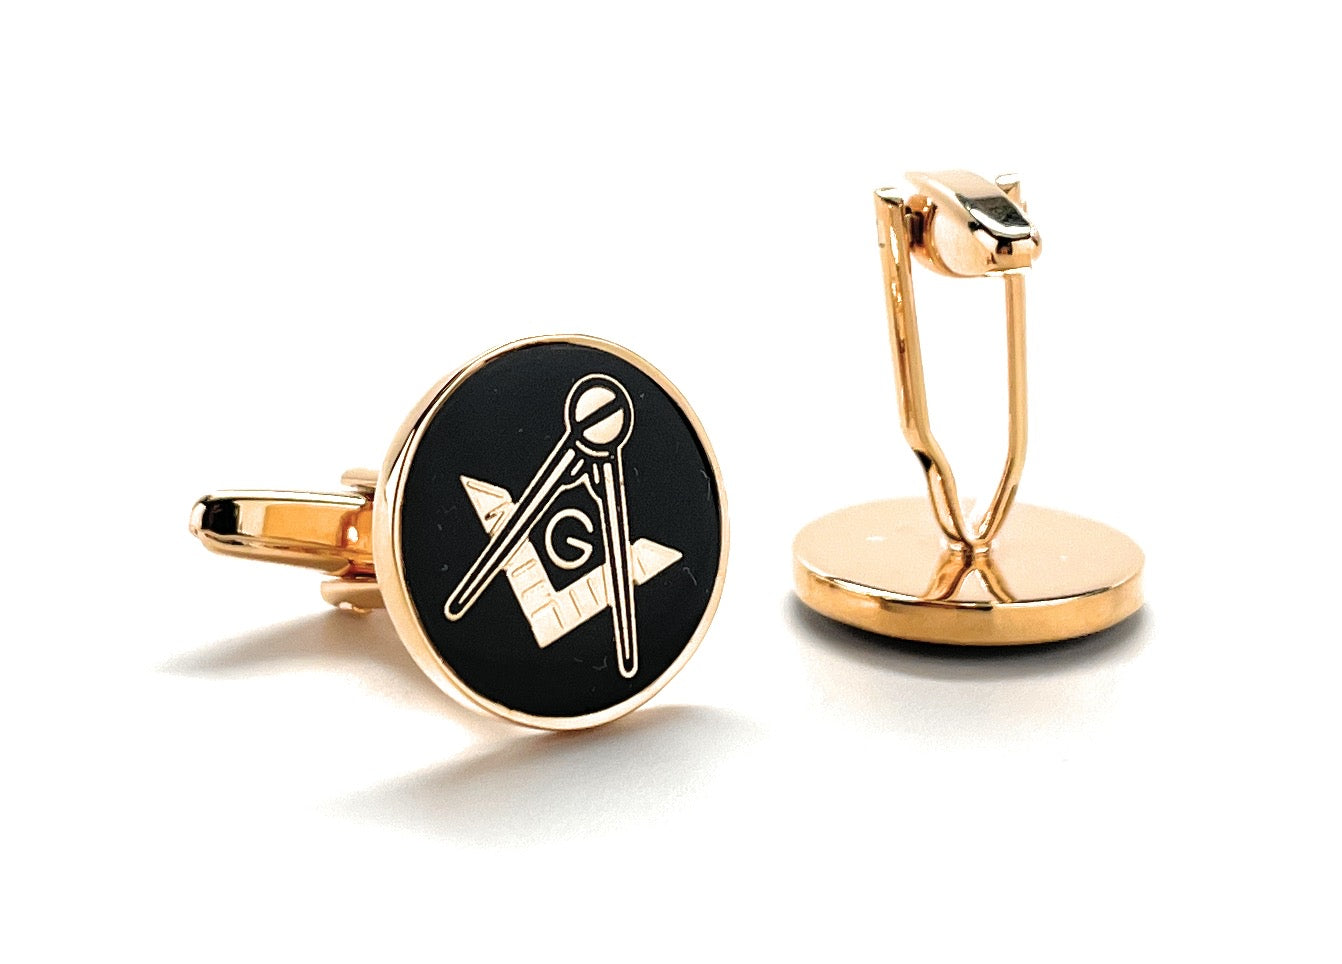 Freemason Cufflinks Freemasonry Cuff Links Gold Black Polished Round Masonic